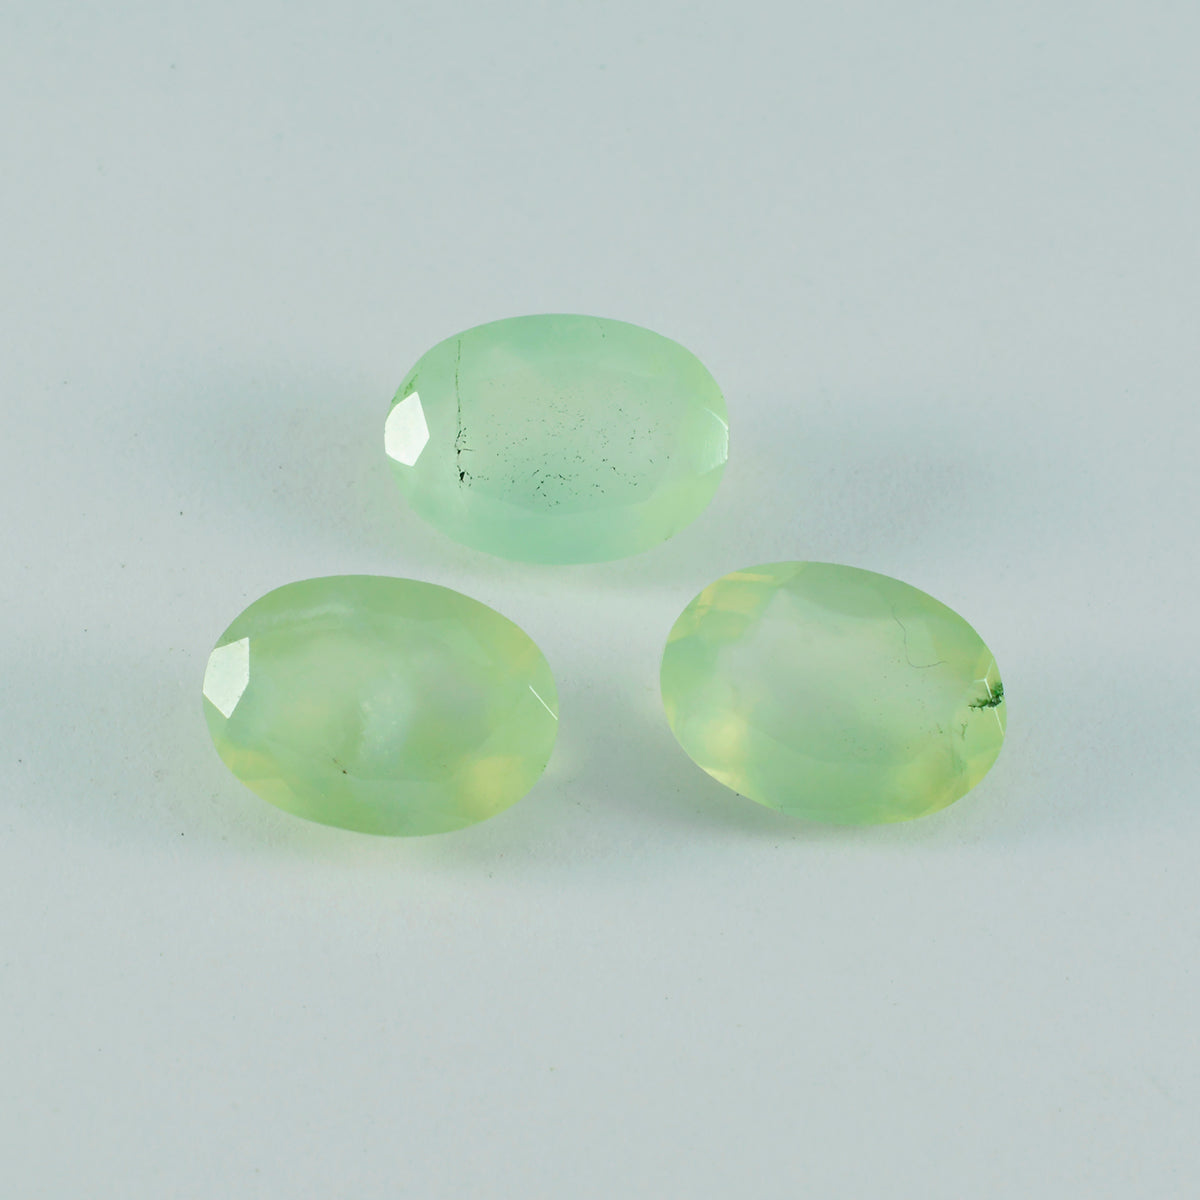 riyogems 1 pieza de prehnita verde facetada de 9x11 mm, forma ovalada, piedra preciosa suelta de buena calidad